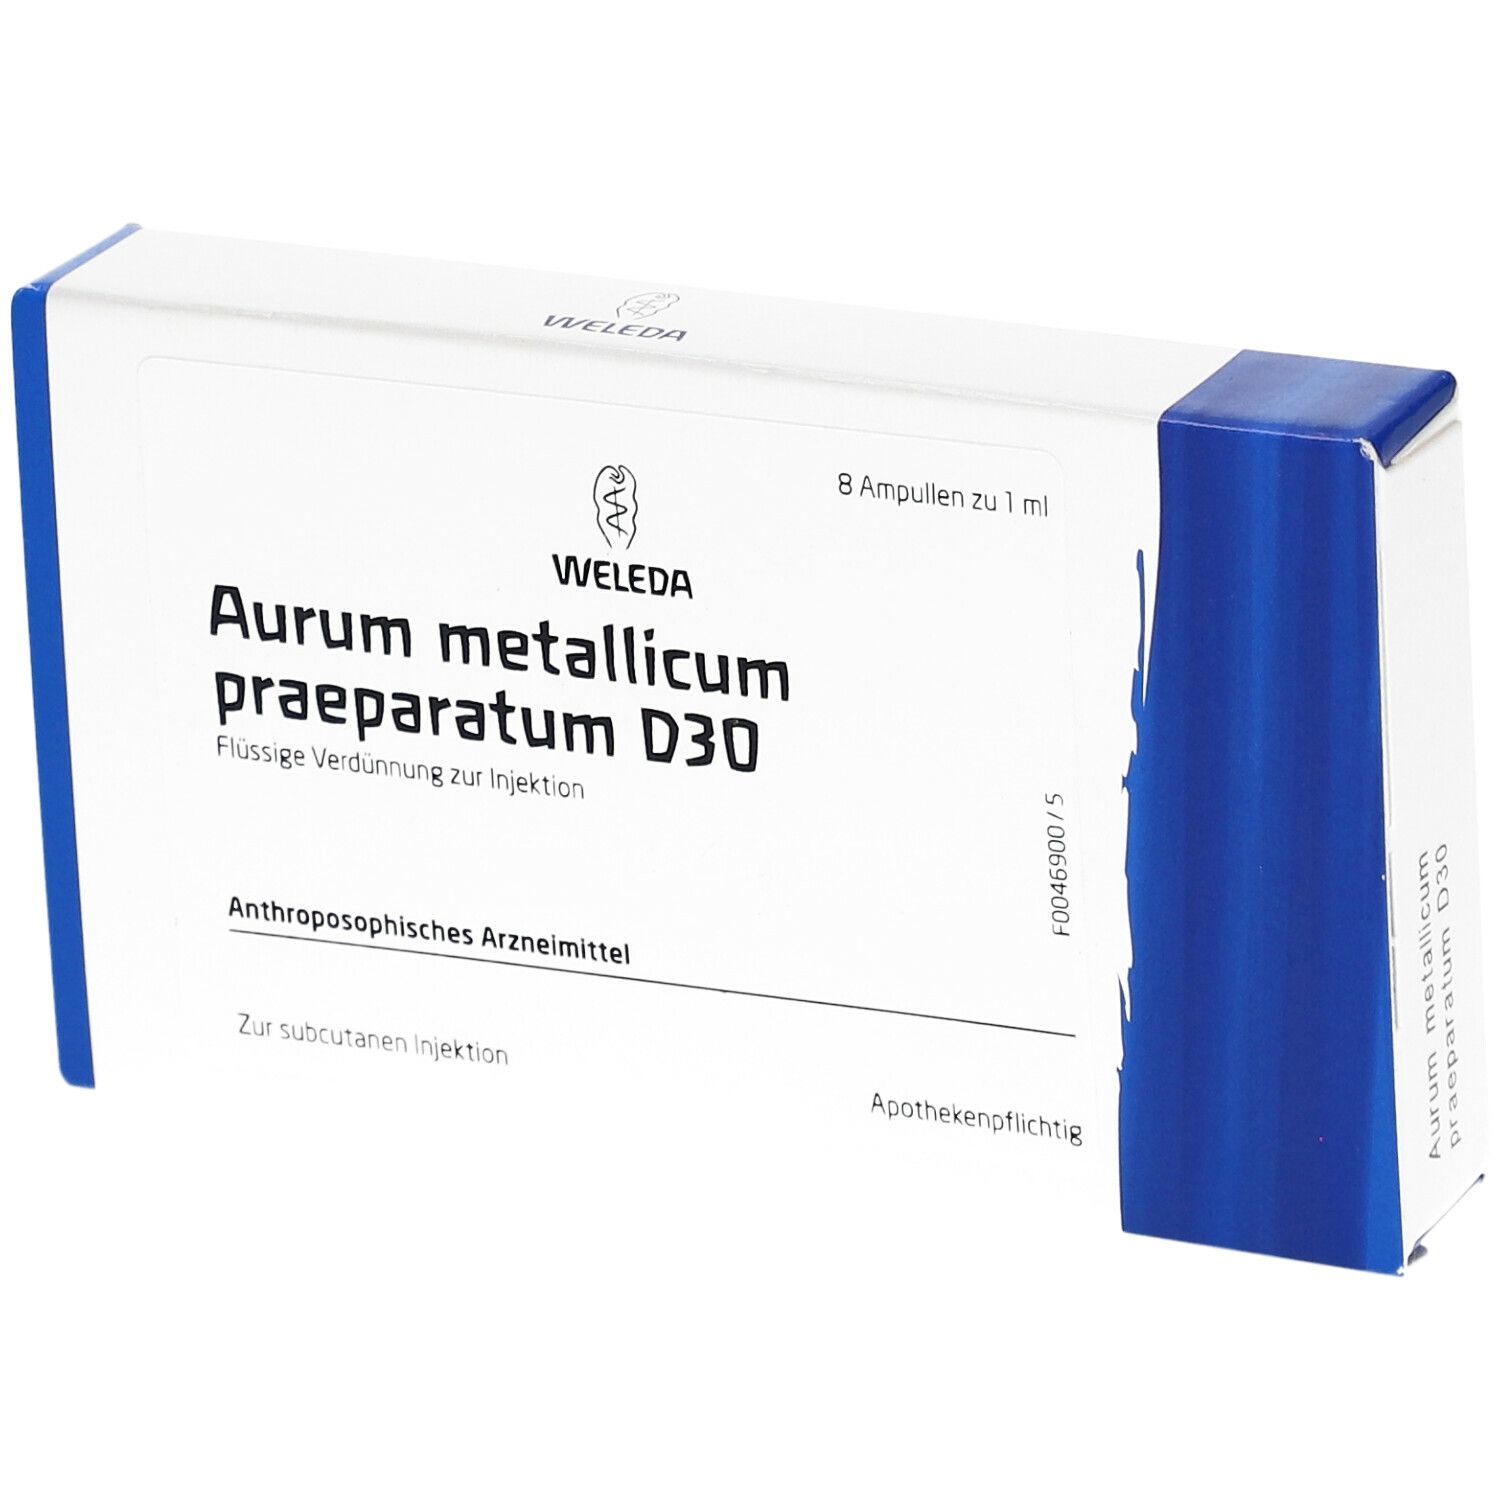 Aurum Metallicum Praeparatum D30